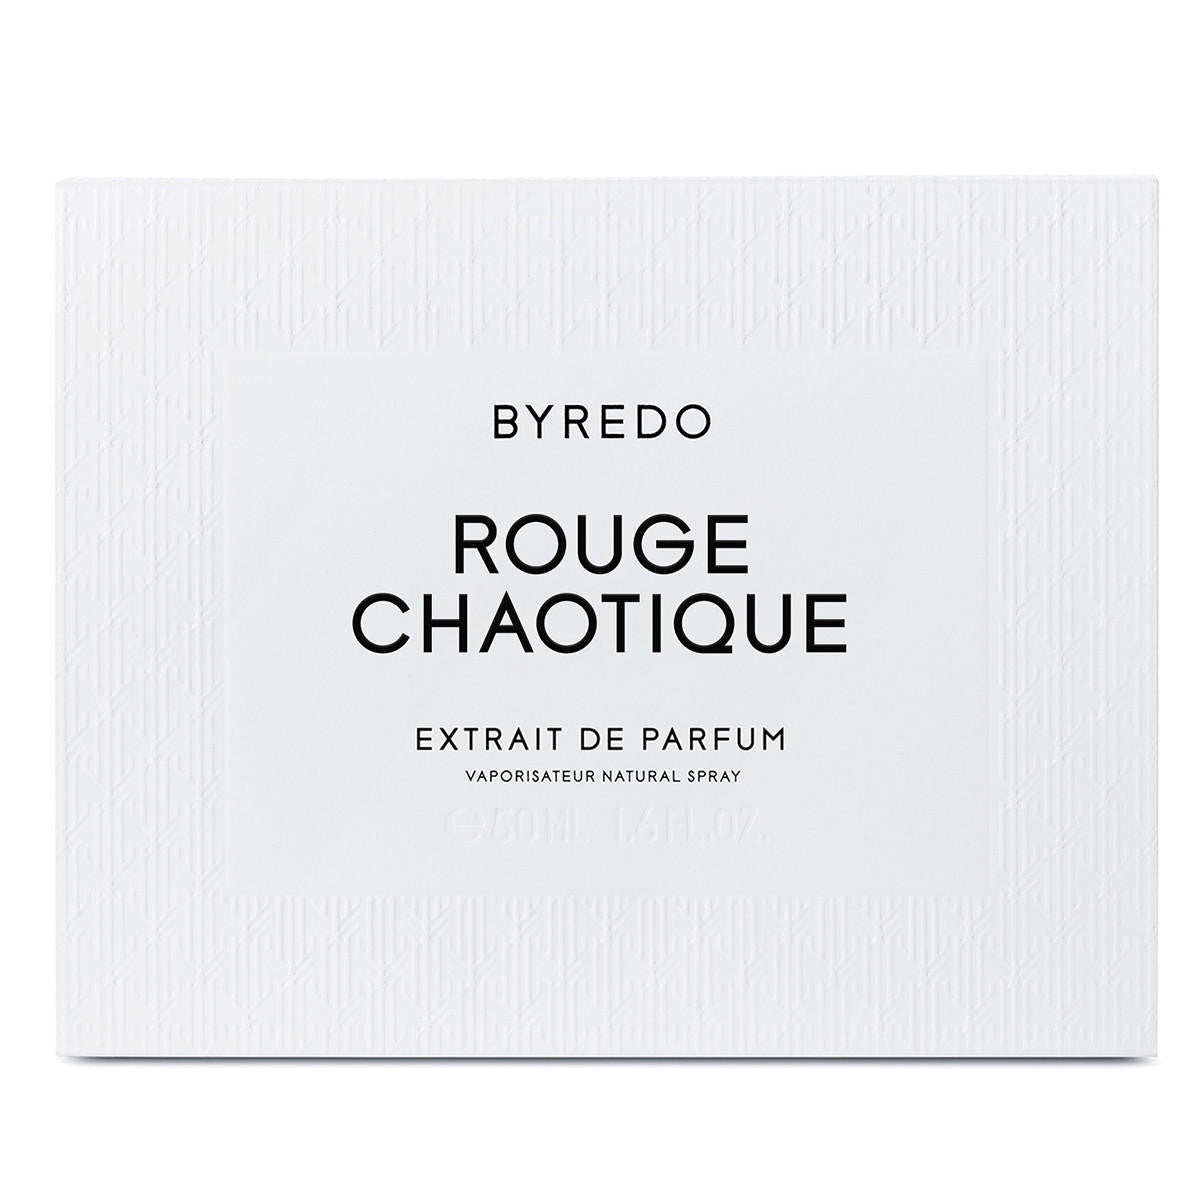  BYREDO Rouge Chaotique Extrait de Parfum 